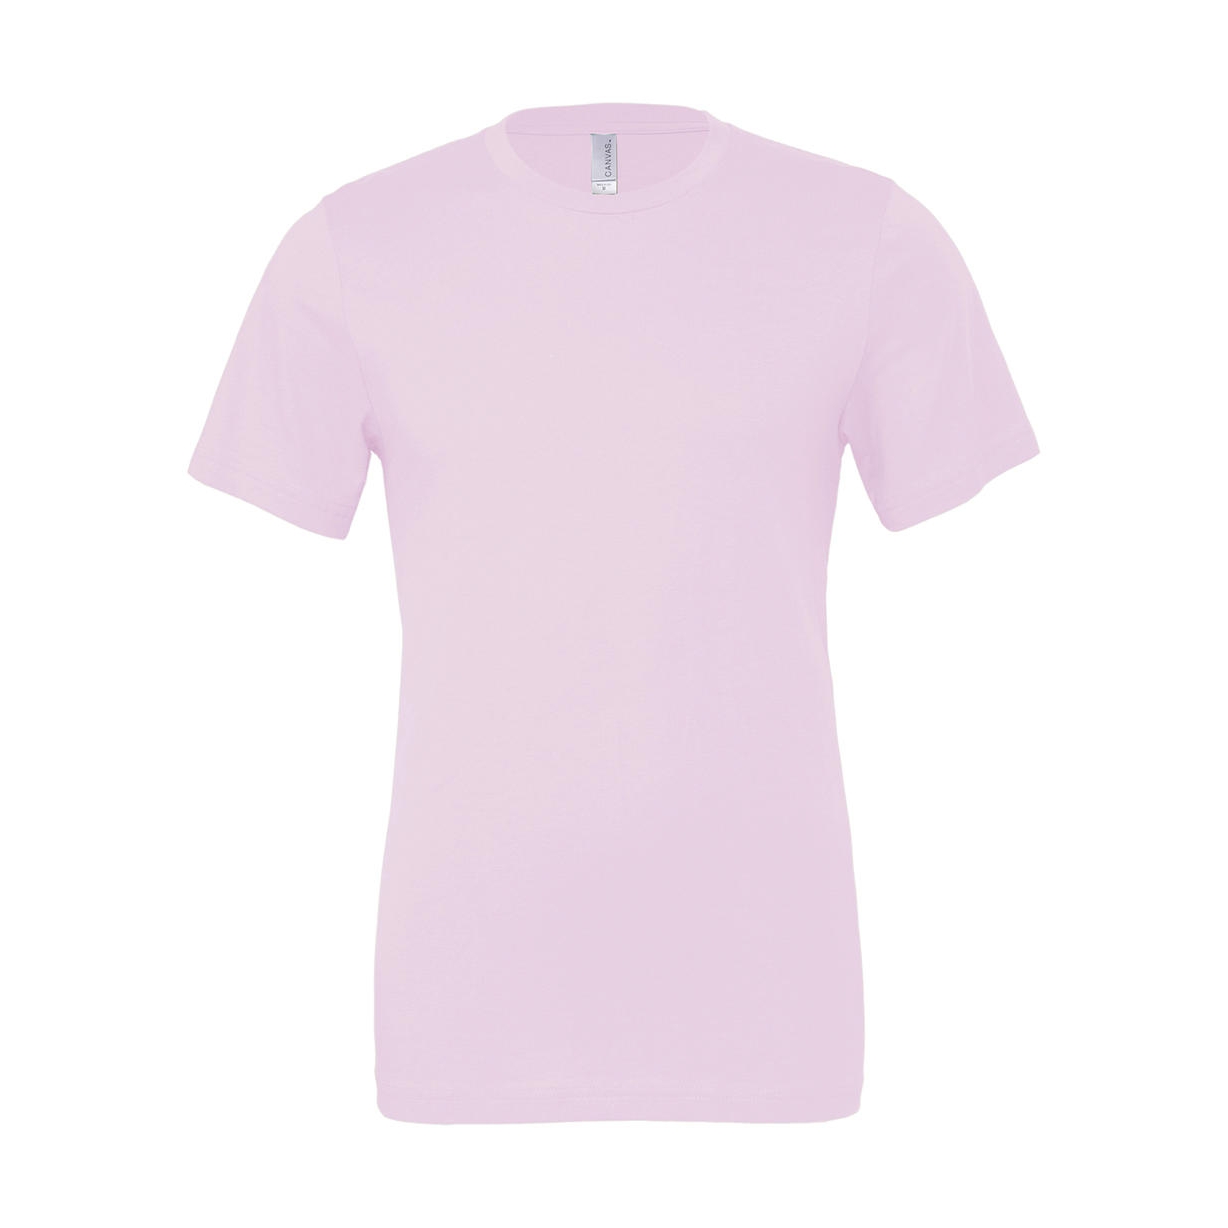 Tričko Bella Jersey - světle růžové, XXL